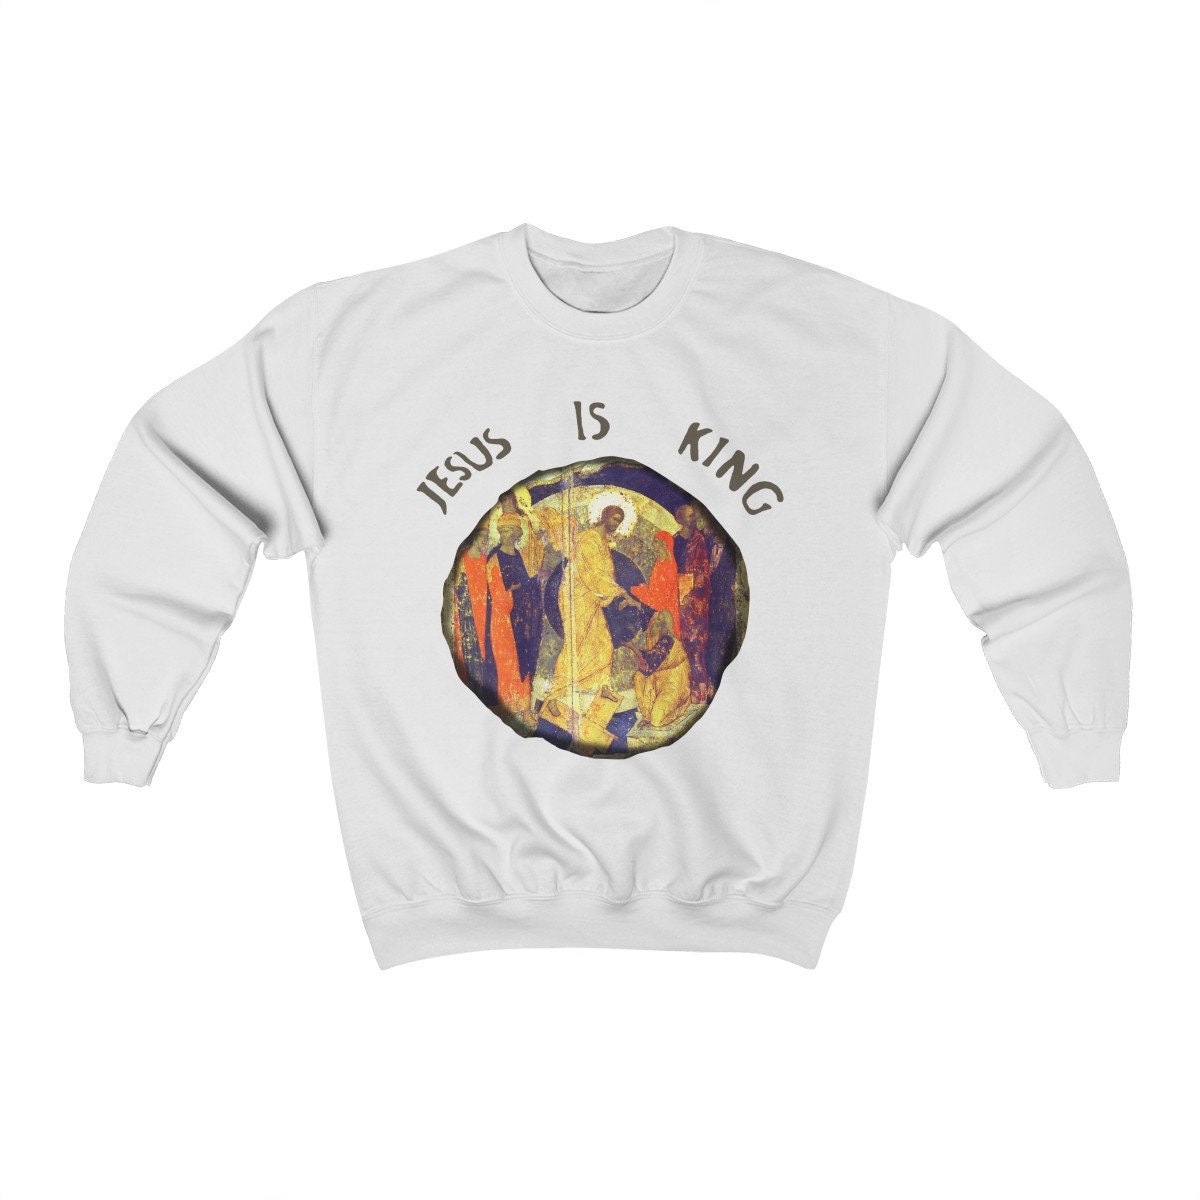 Jesus Is King Unisex Heavy Blend Crewneck Sweatshirt - Kanye West Sunday Service Inspired Christian Religious Sweatshirt